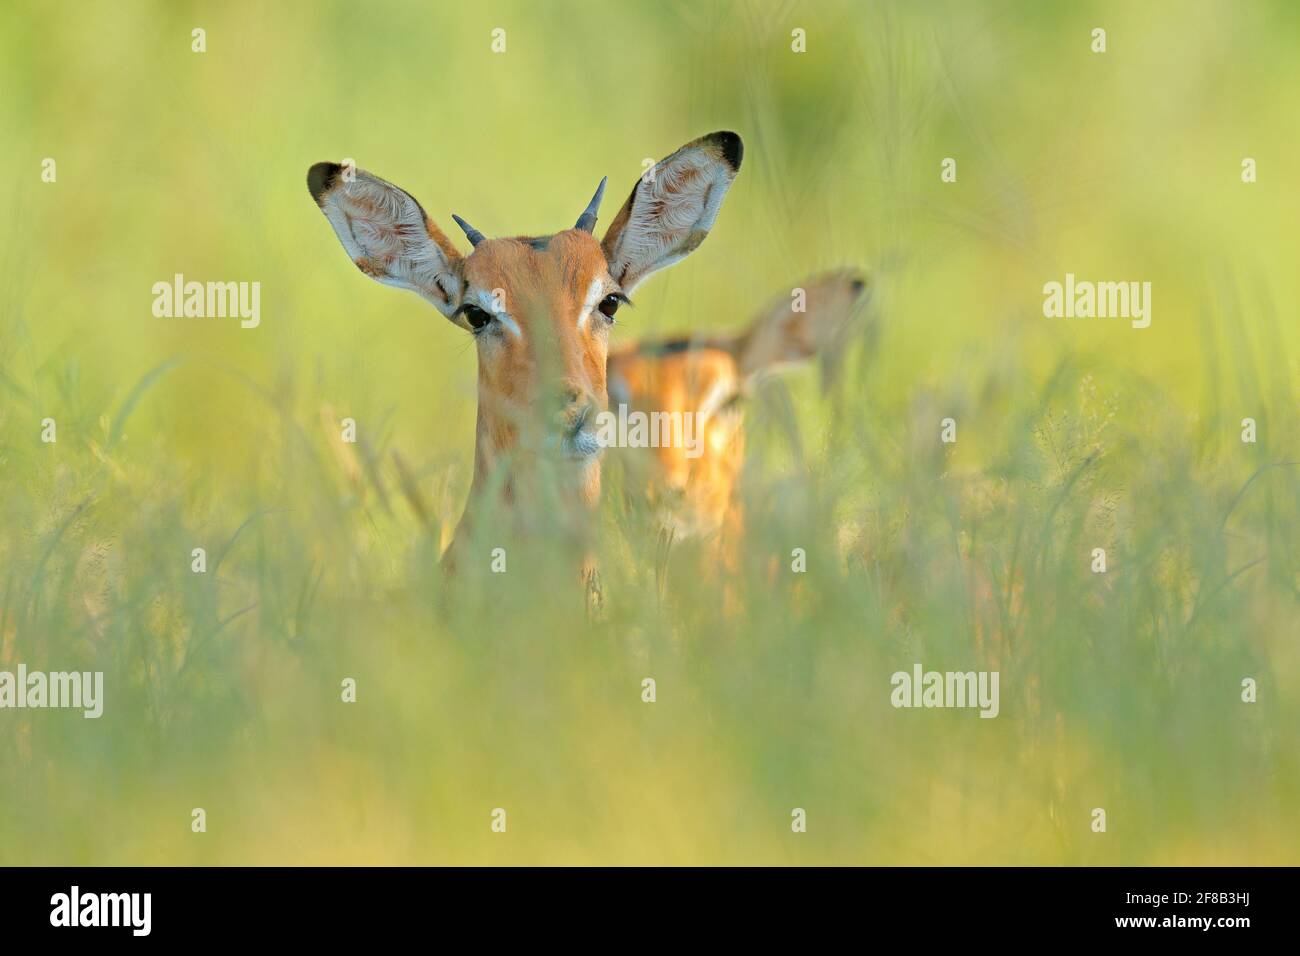 Schönes Impala im Gras mit Abendsonne, verstecktes Porträt in Vegetation. Tier in der wilden Natur . Sonnenuntergang in Afrika Tierwelt. Lebensraum. Stockfoto